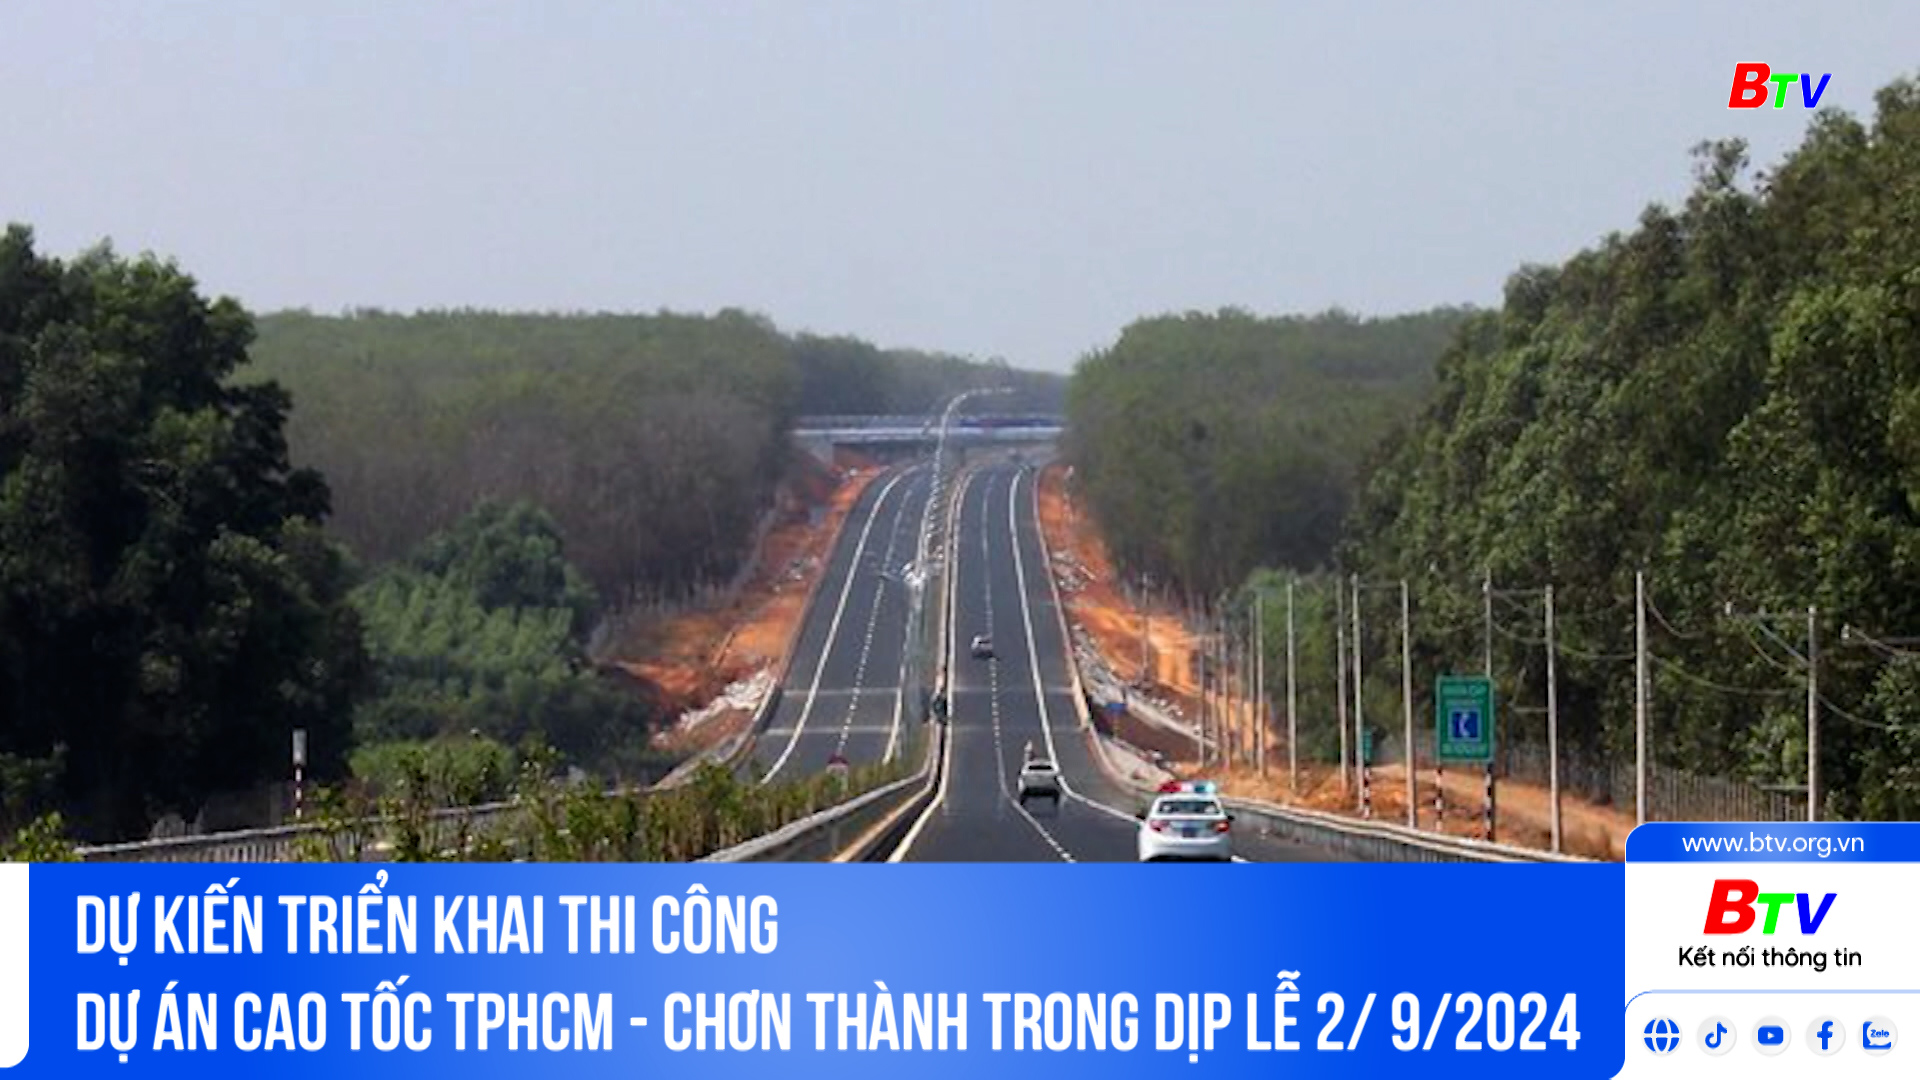 Dự kiến triển khai thi công dự án cao tốc TPHCM - Chơn Thành trong dịp Lễ 2/ 9/2024